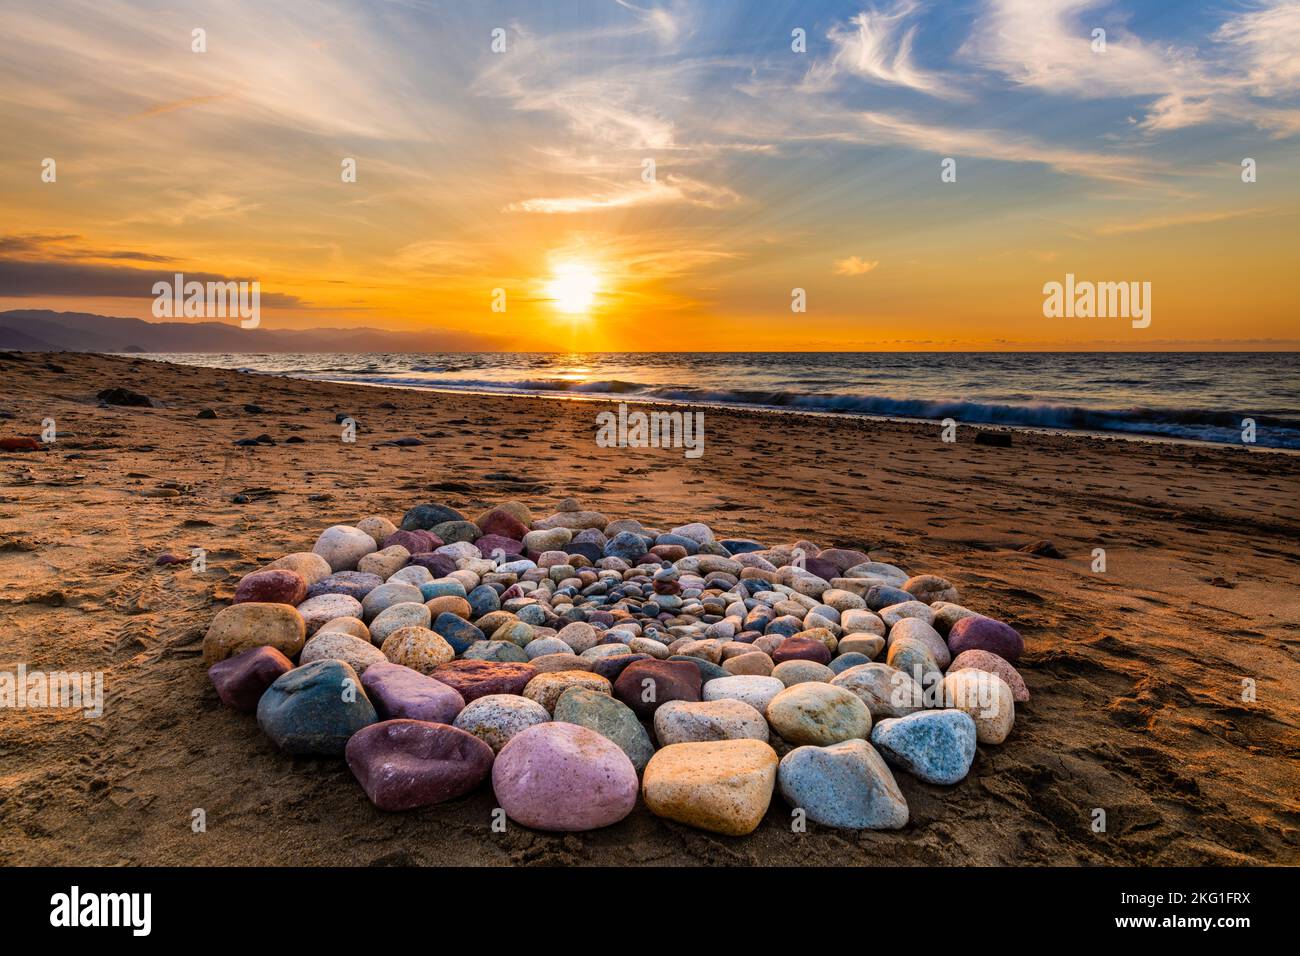 Während des Sonnenuntergangs am Strand werden heilige Ritualsteine für spirituelle Zeremonien in Einem Kreis angeordnet Stockfoto